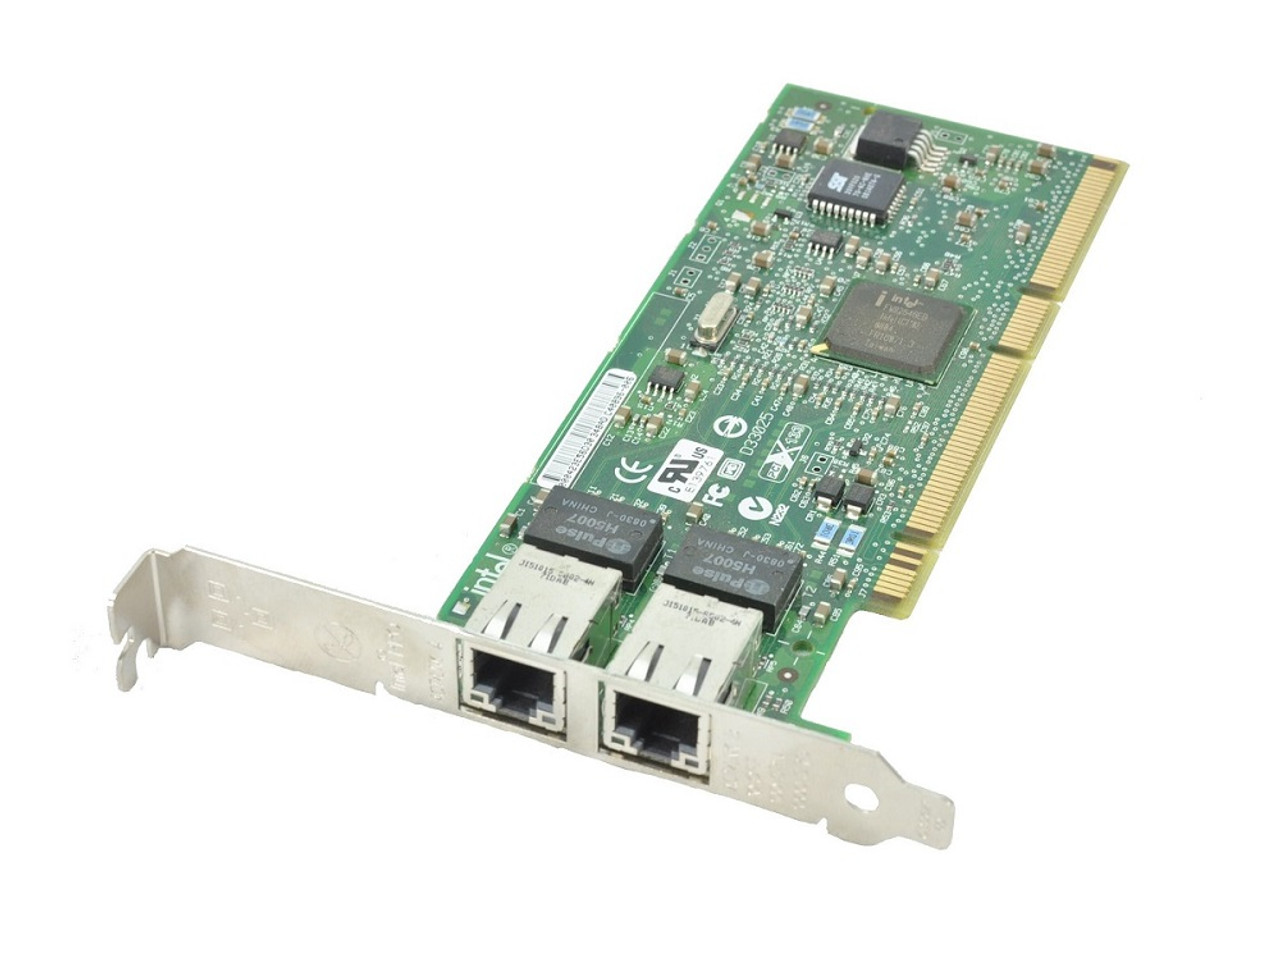 0J53X3 - Dell 6GB/s SAS Host Bus Adapter (HBA) External Controller Card